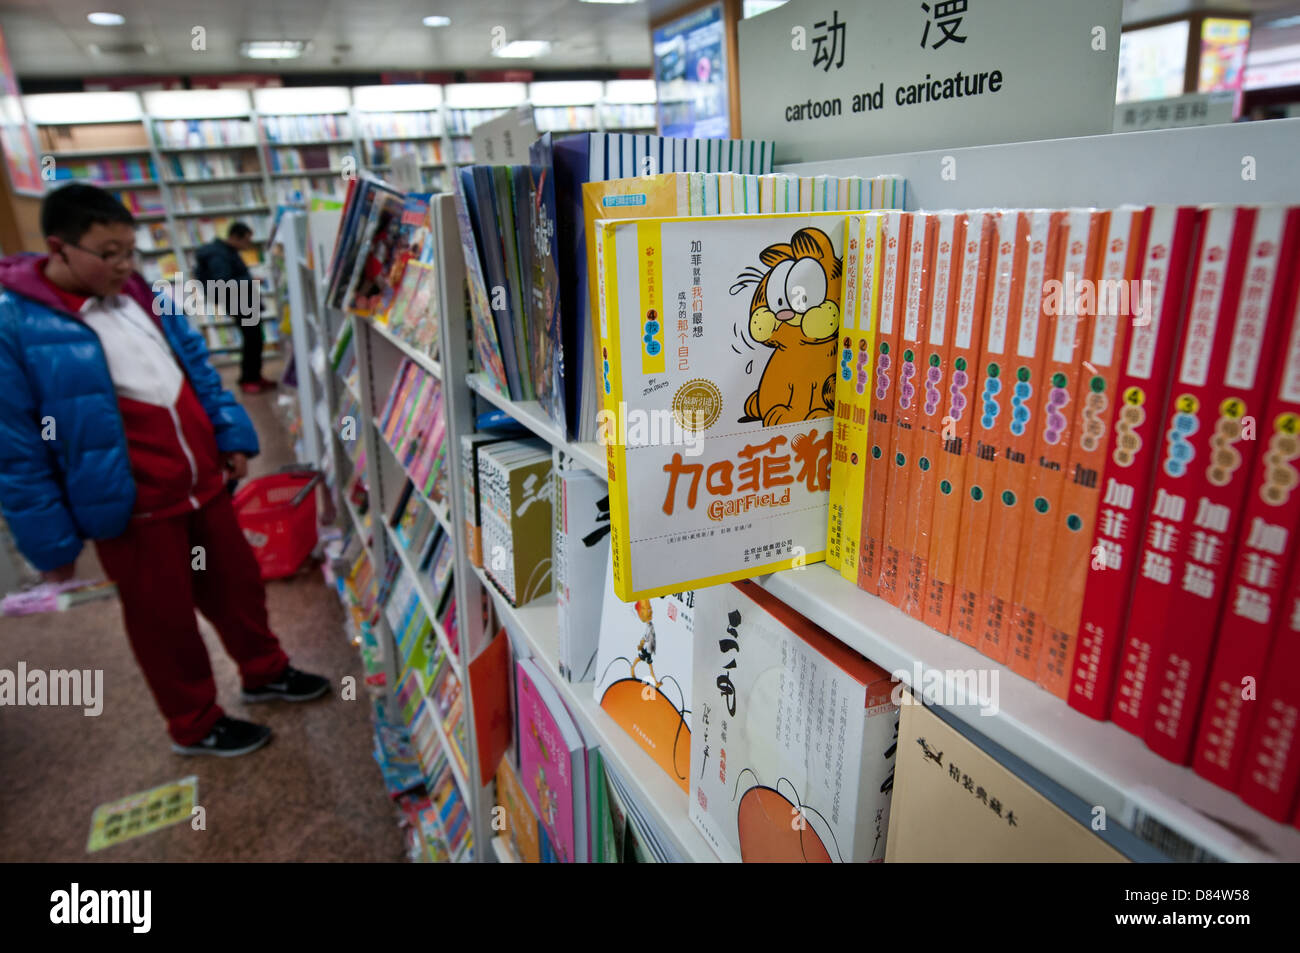 huge multi-storey Wangfujing Xinhua Bookstore at Wangfujing Street in Dongcheng District, Beijing, China Stock Photo